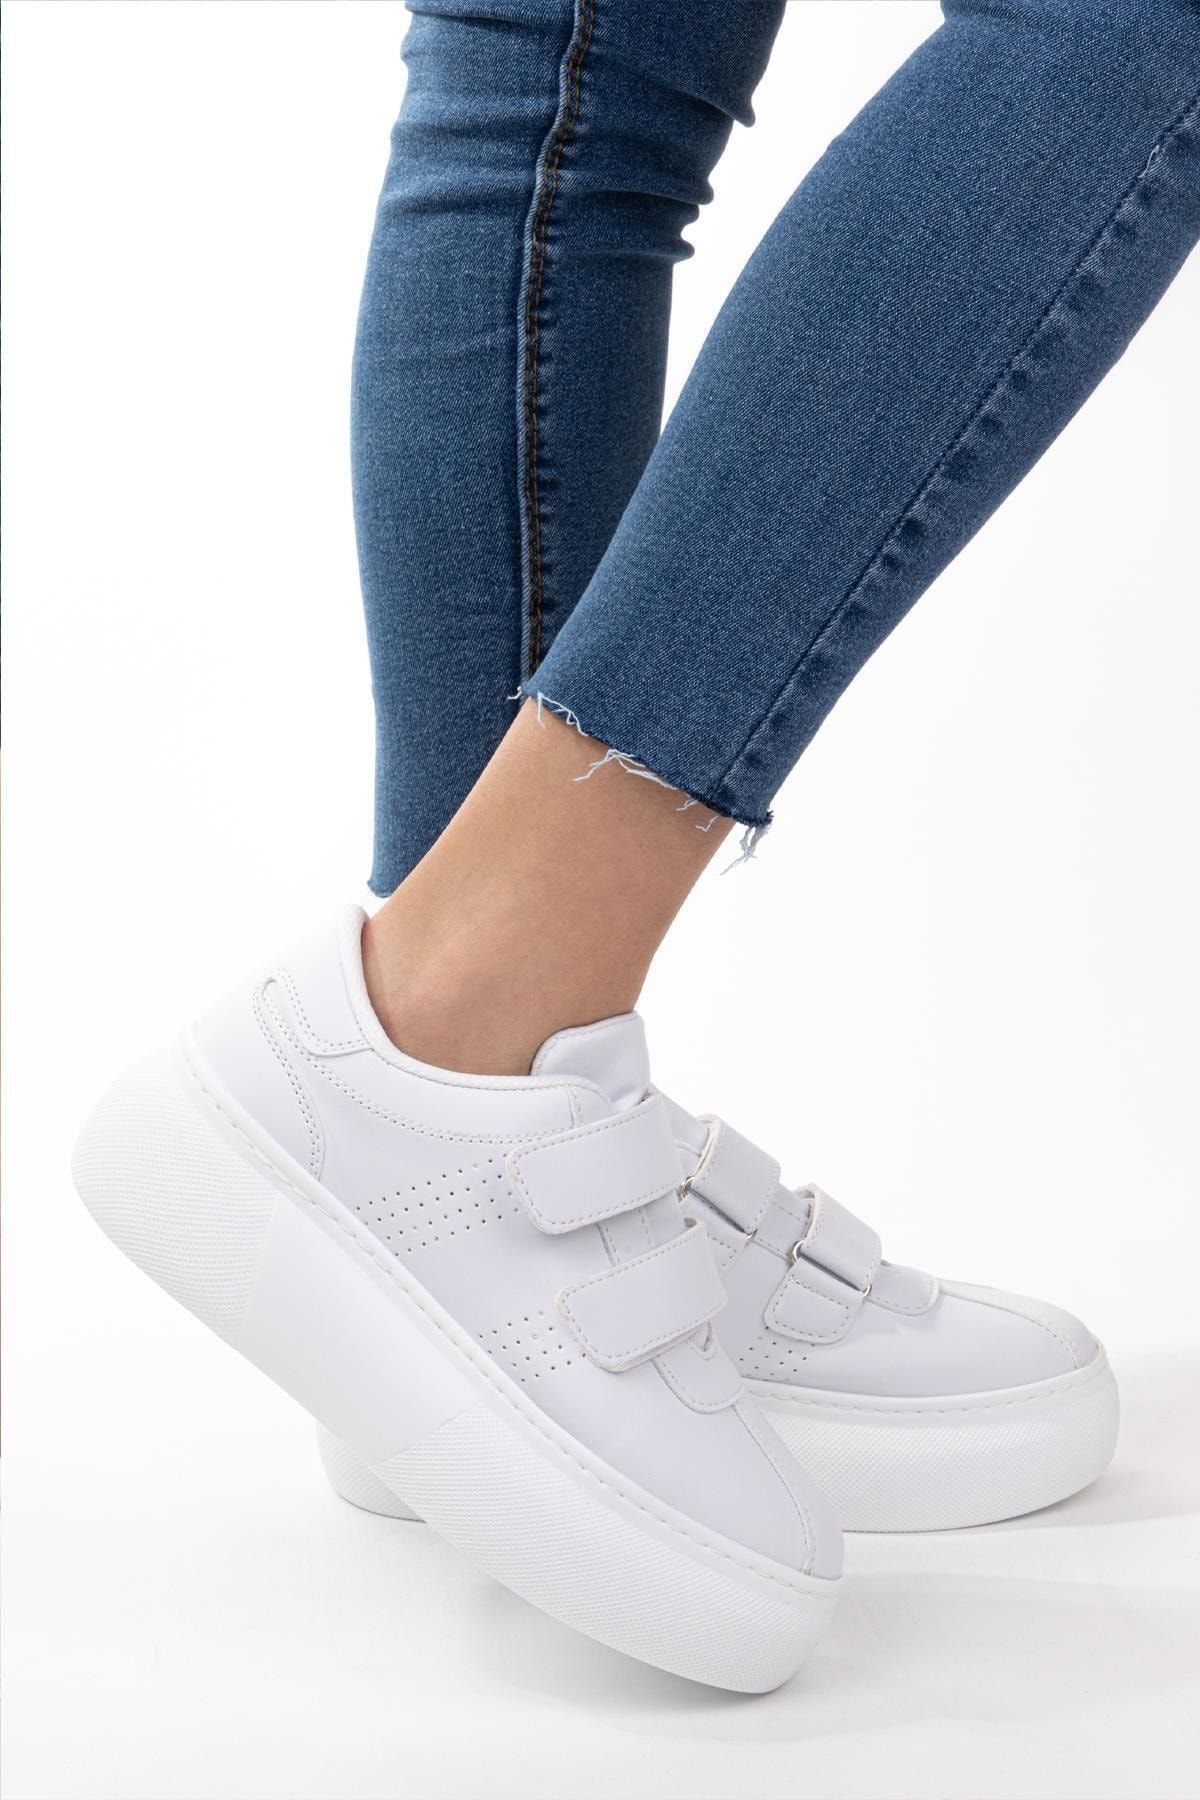 NAVYSIDE Kadın Beyaz Cilt Deri Cırt Cırtlı Sneaker Spor Ayakkabı Yürüyüş Ayakkabısı Yüksek Tabanlı Bantlı